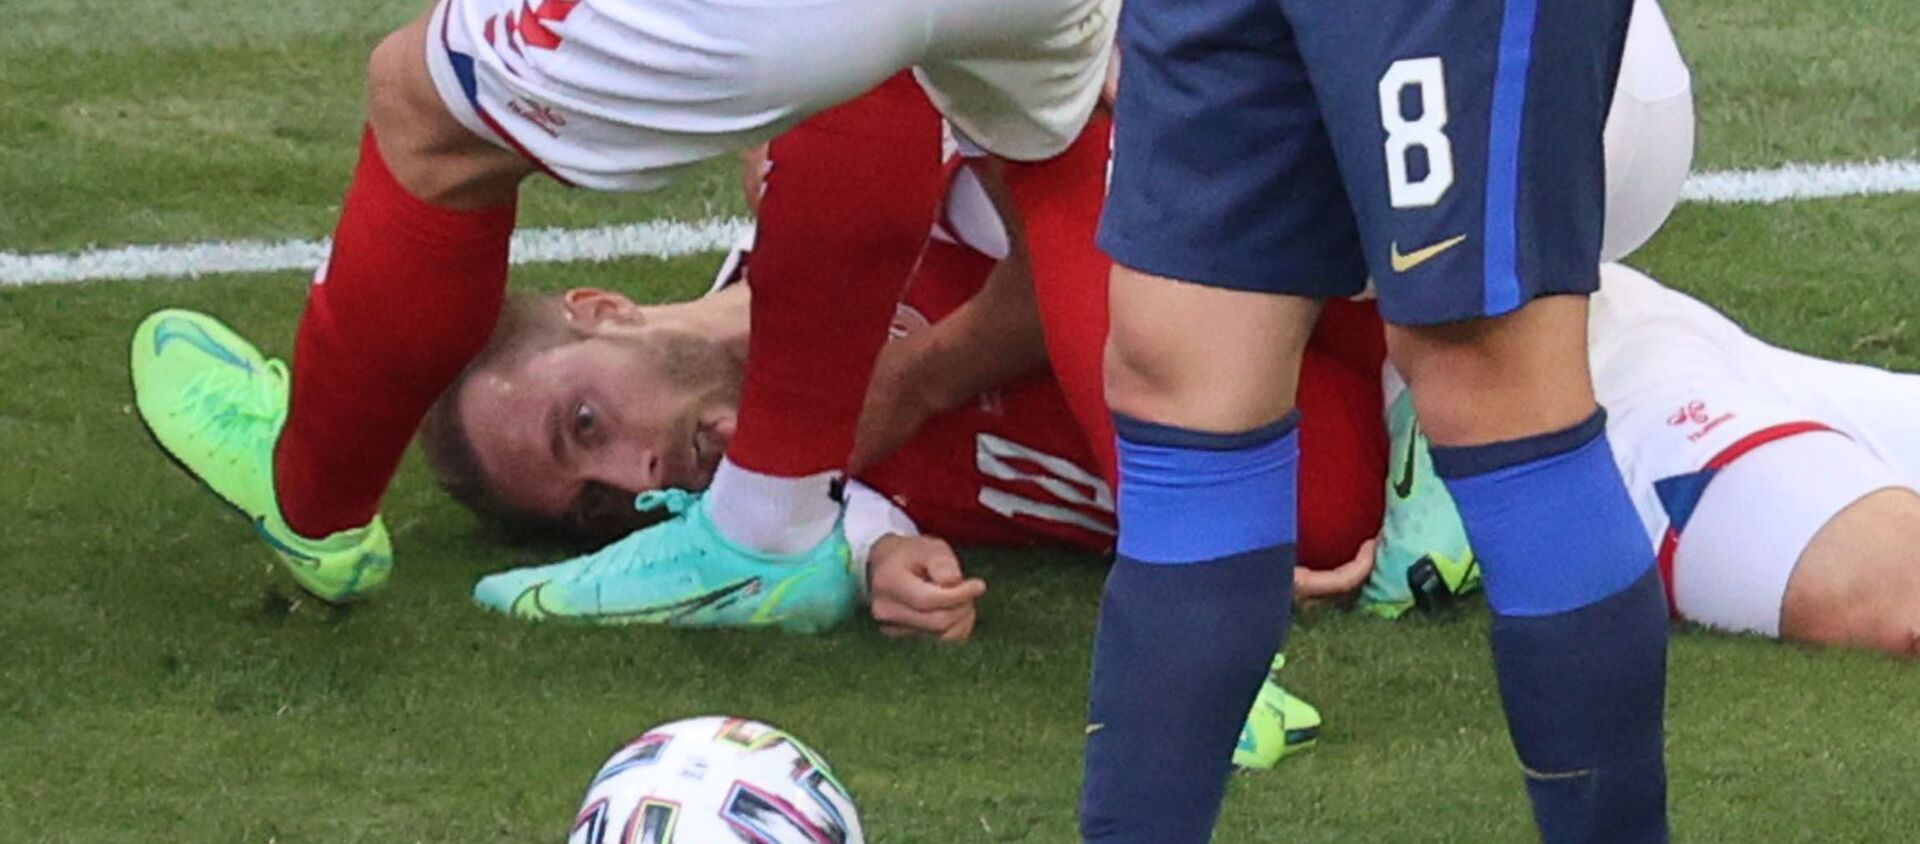 Футболист сборной Дании Кристиан Эриксен потерял сознание во время матча ЕВРО-2020 - Sputnik Азербайджан, 1920, 12.06.2021